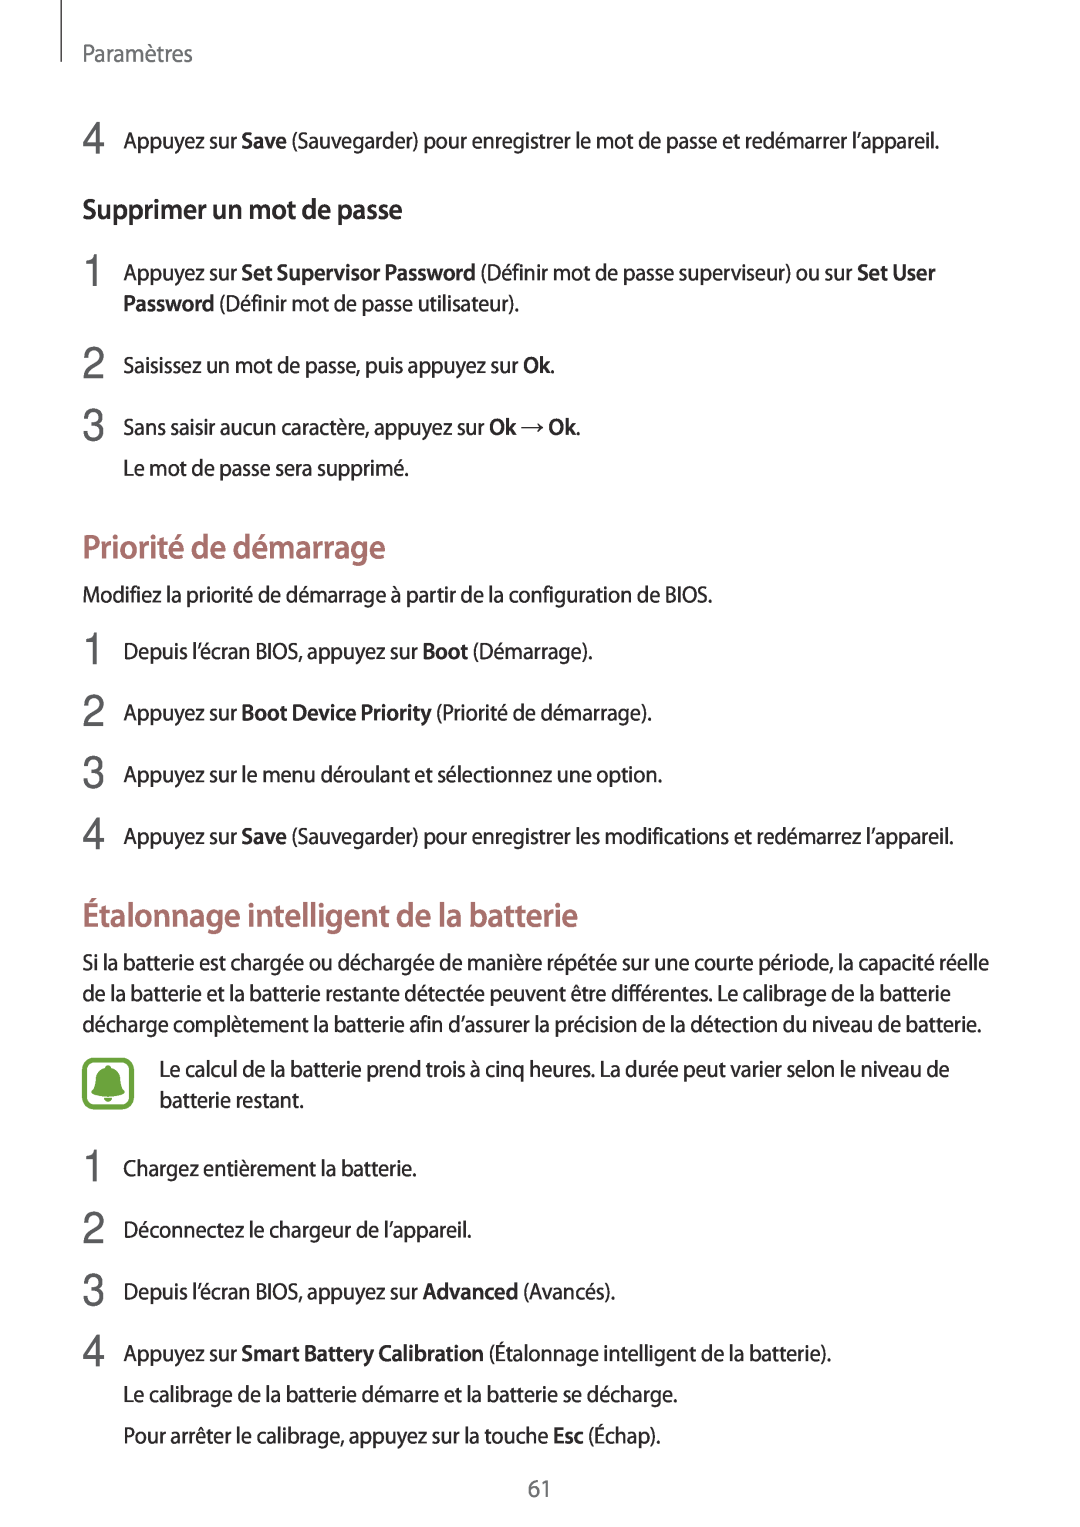 Samsung SM-W620NZKBXEF Priorité de démarrage, Étalonnage intelligent de la batterie, Supprimer un mot de passe, Paramètres 